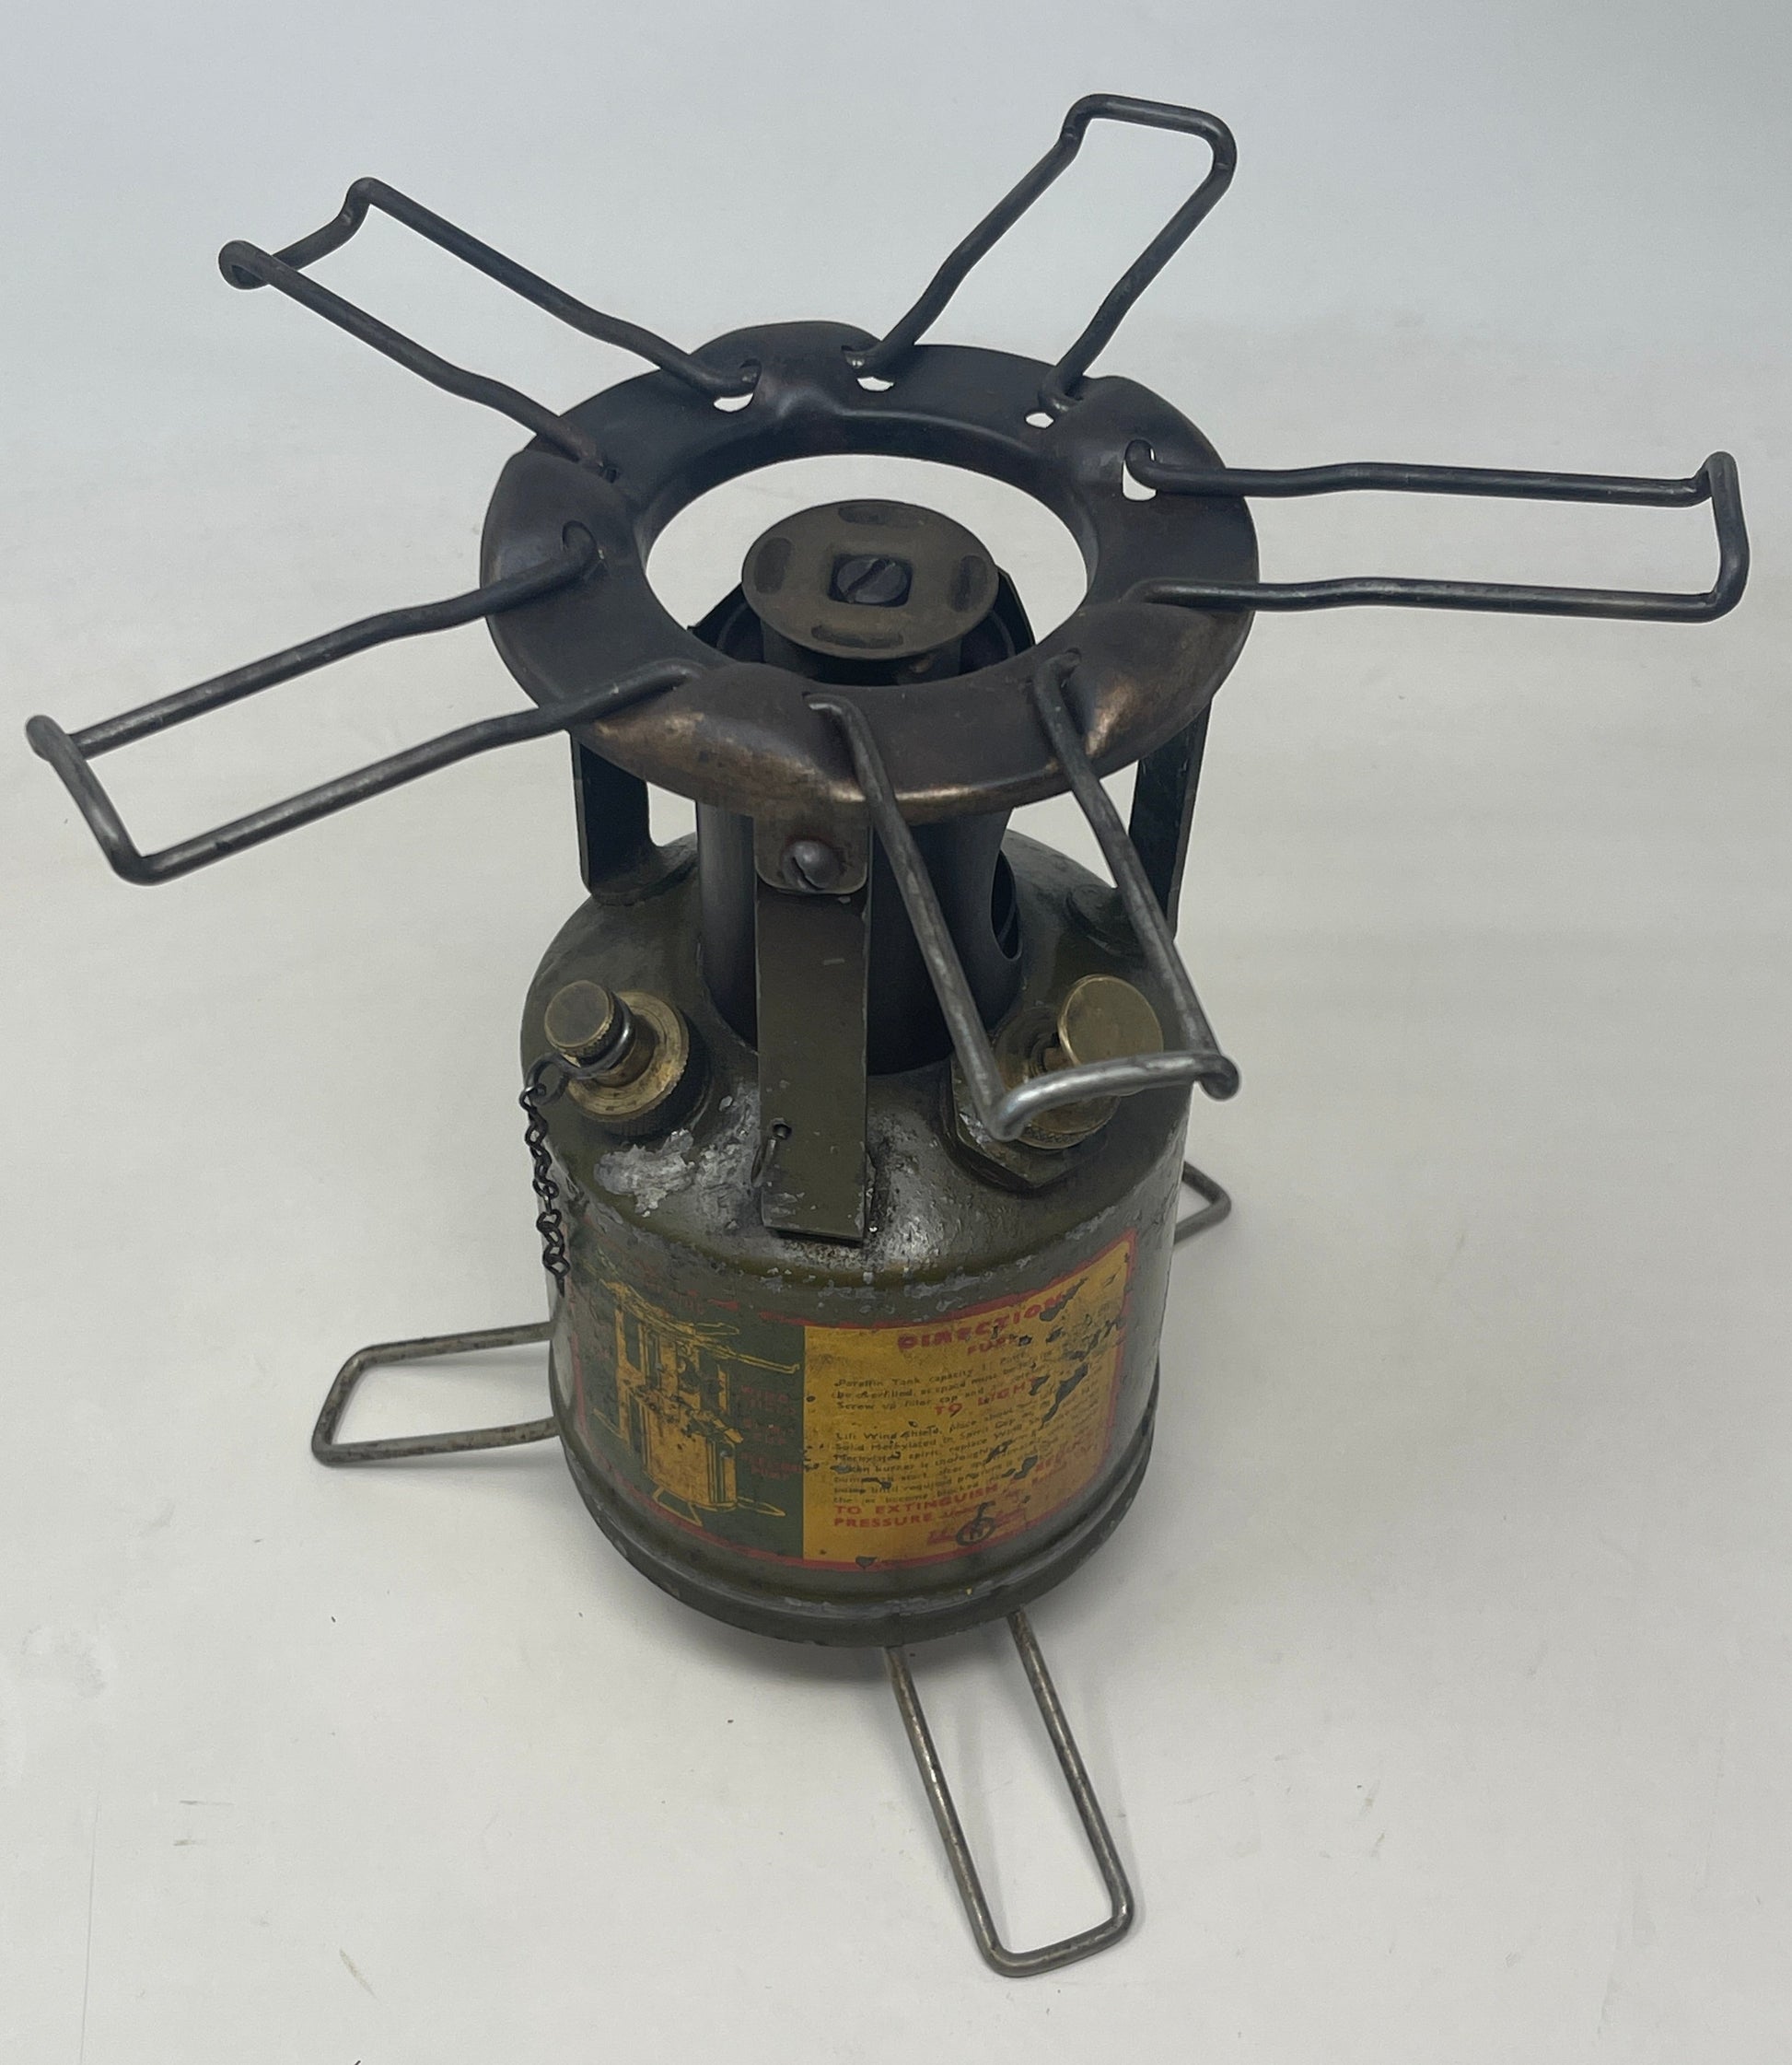 An original WW2 "Hurlock " field cooker